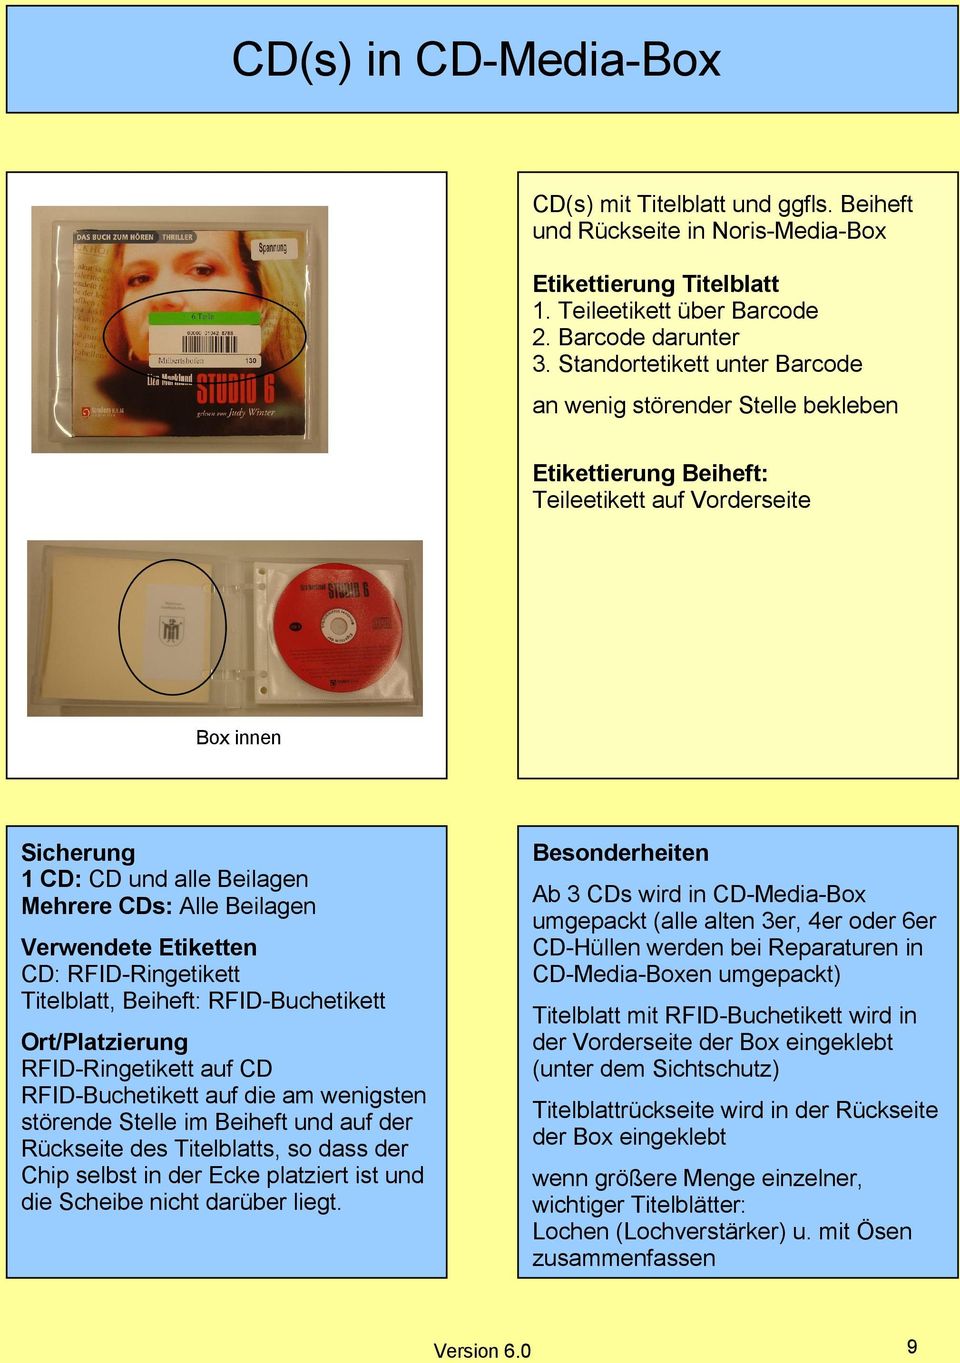 CD-Media-Box umgepackt (alle alten 3er, 4er oder 6er CD-Hüllen werden bei Reparaturen in CD-Media-Boxen umgepackt) CD: RFID-Ringetikett Titelblatt, Beiheft: RFID-Buchetikett Titelblatt mit